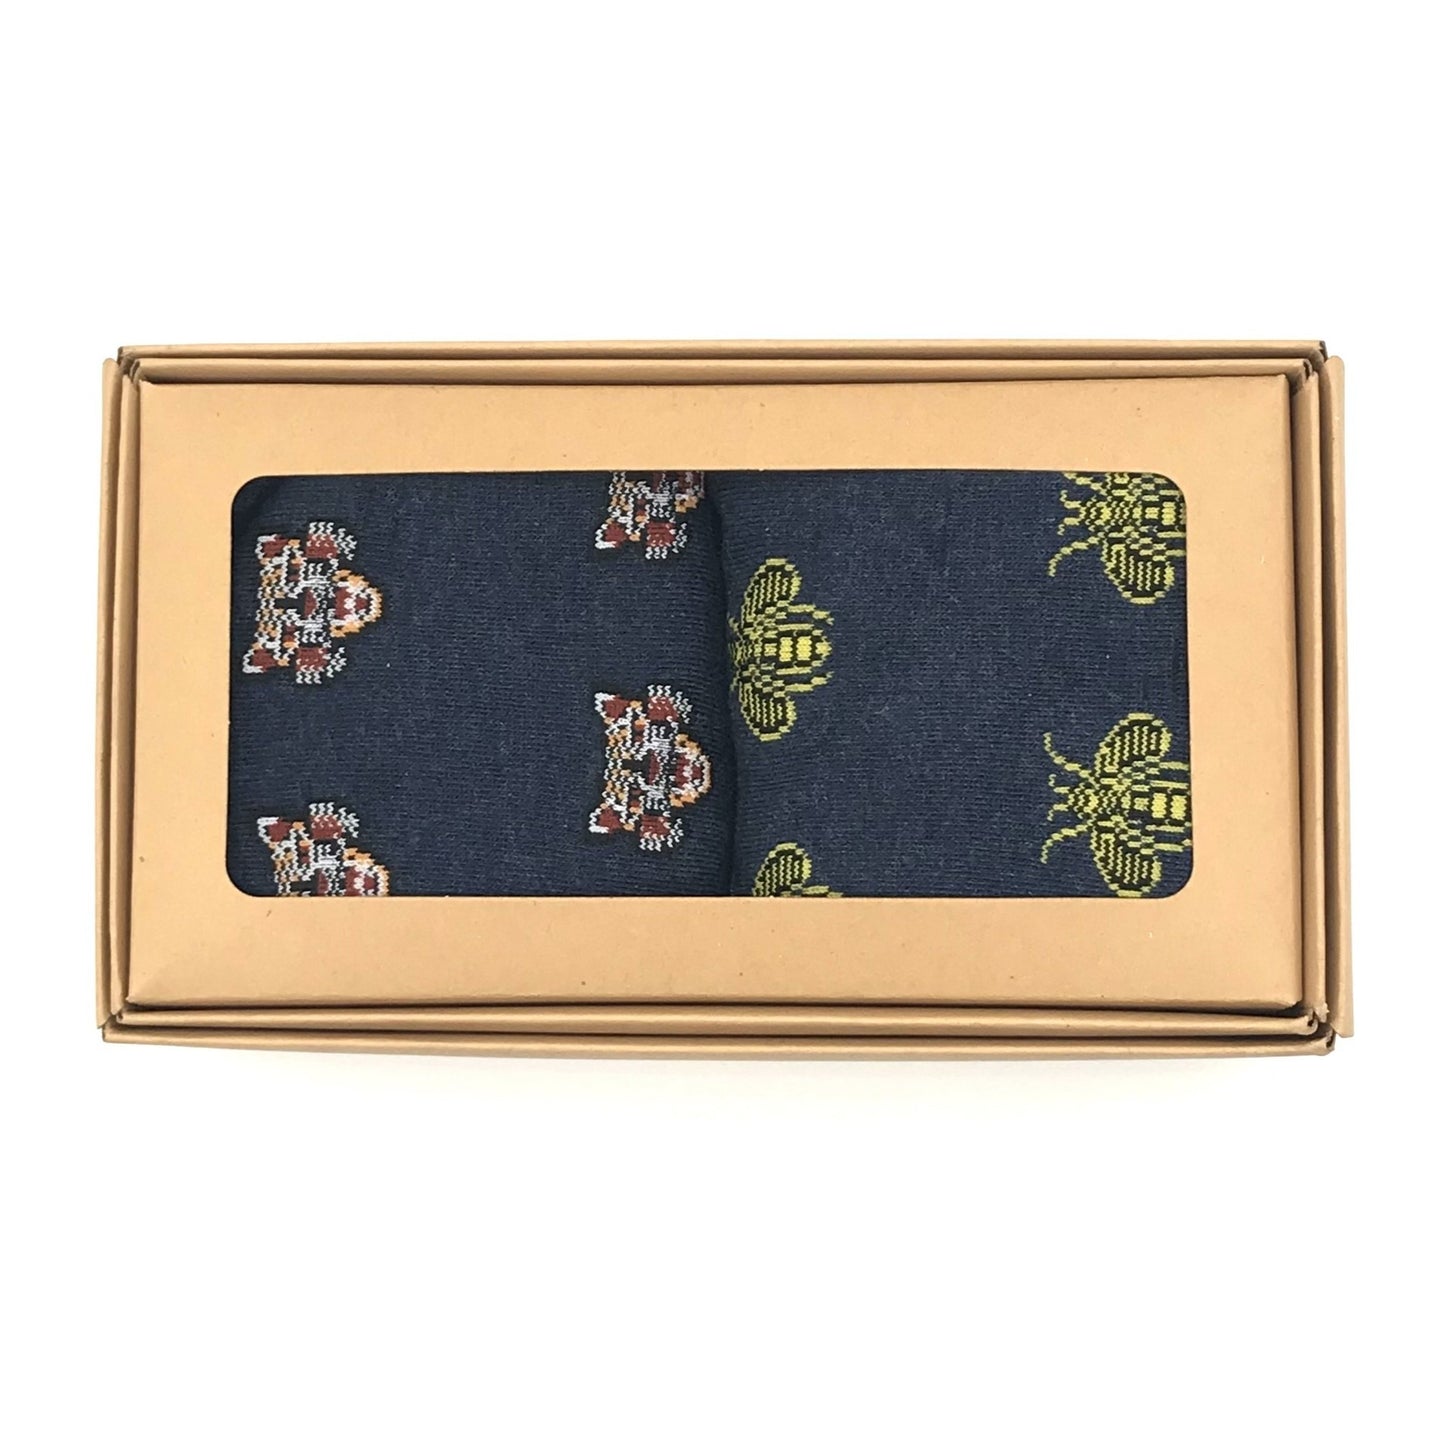 Men's Seoul sock box and pin